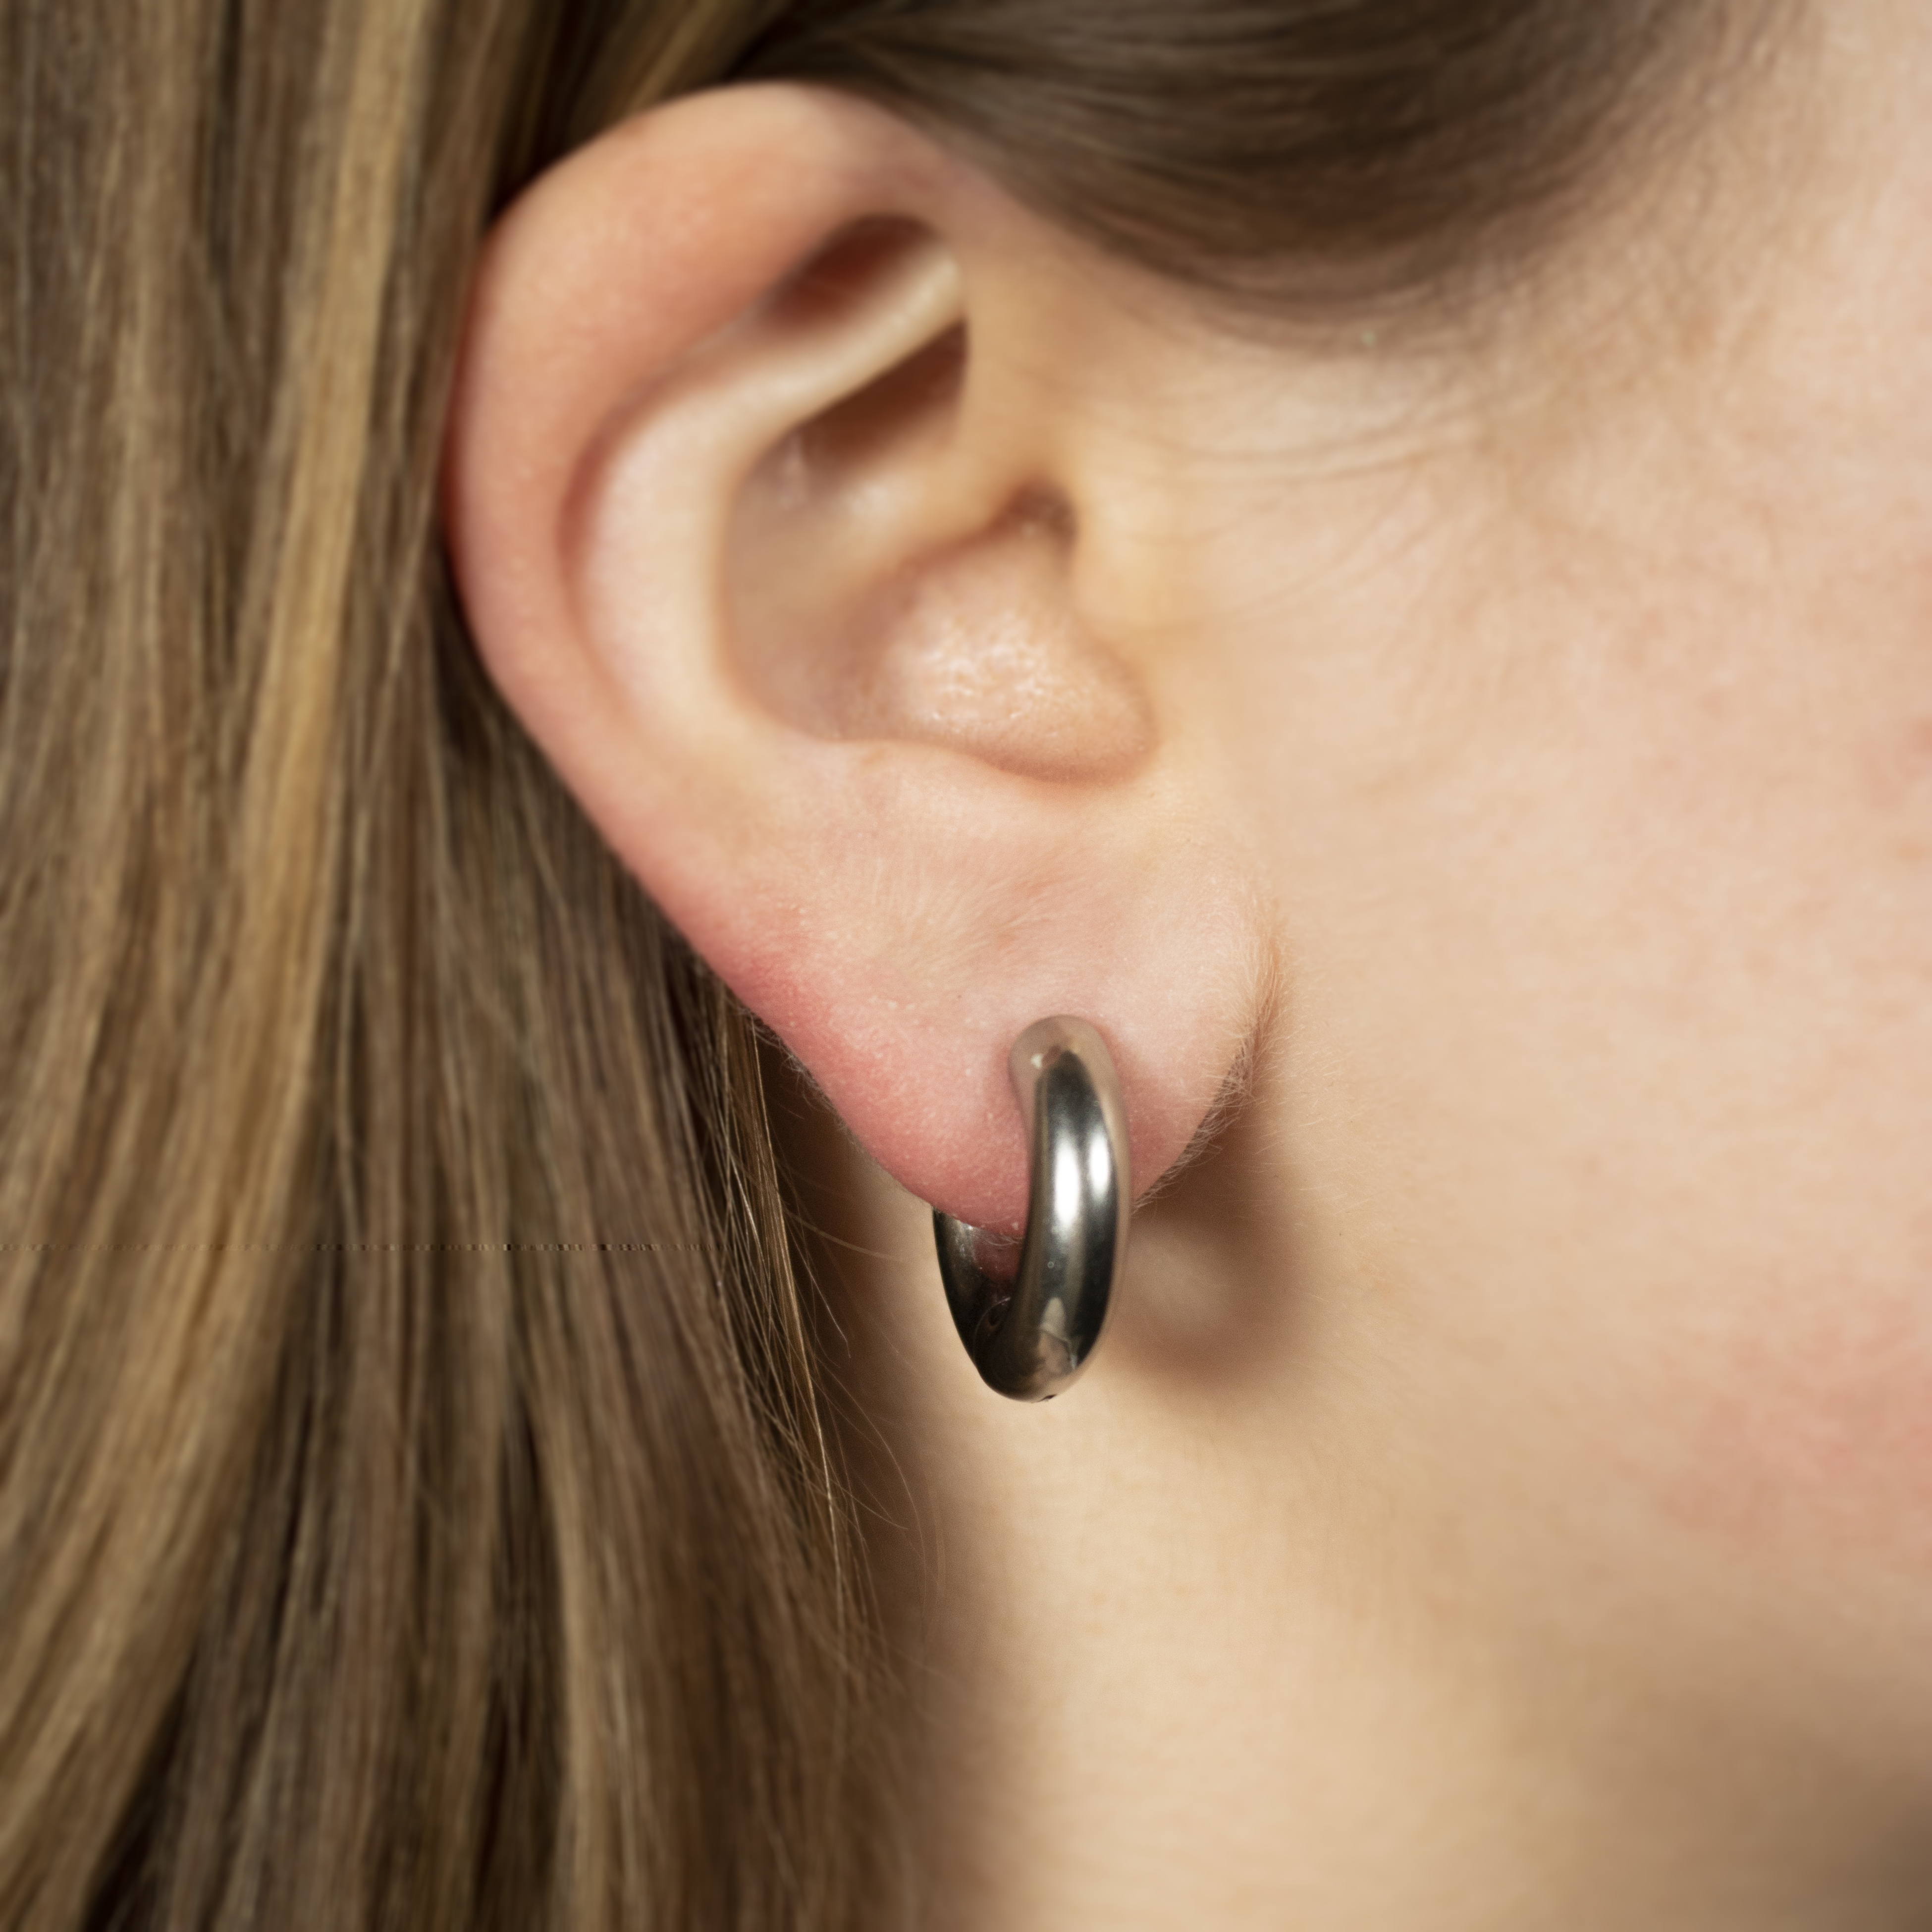 Silver hoop earrings with black link clasp